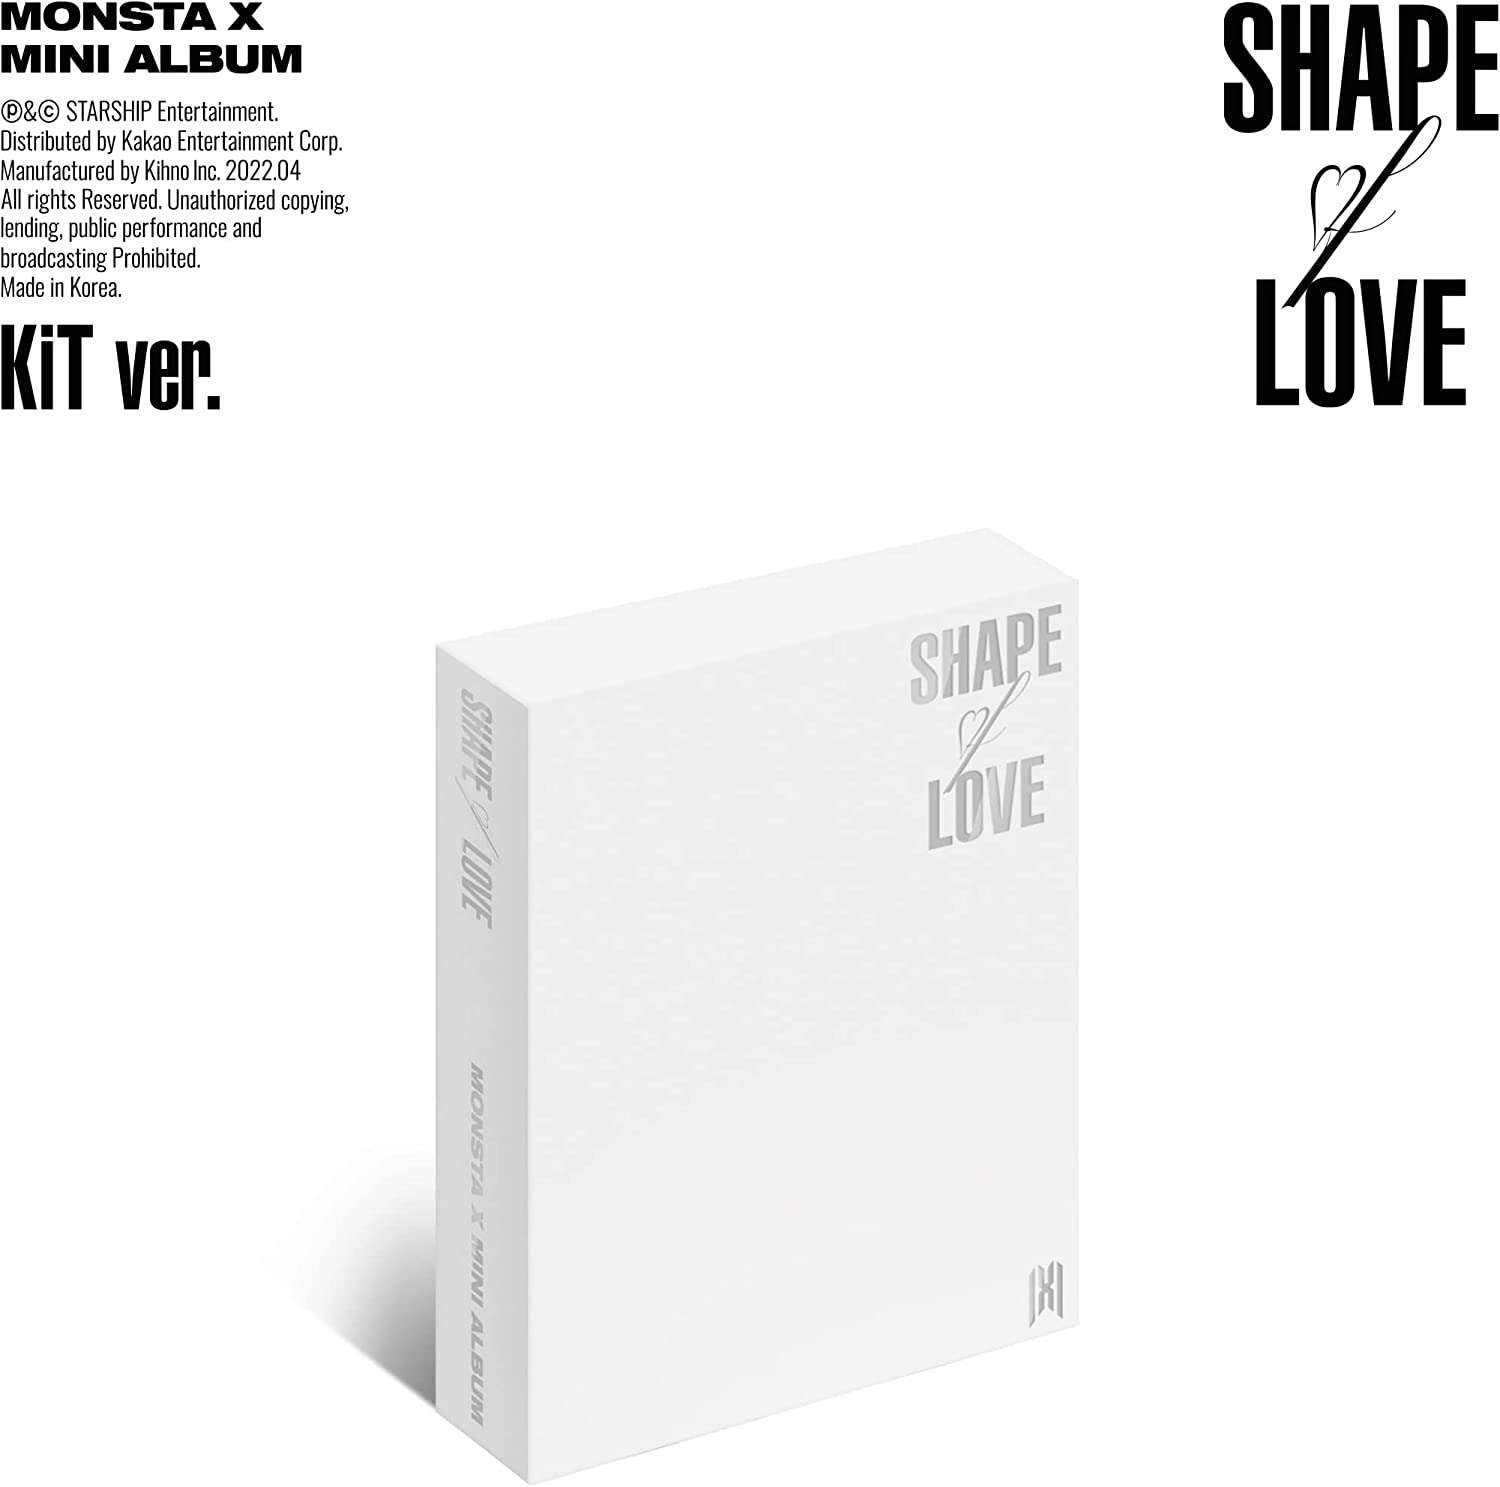 MONSTA X Mini Album Vol. 11 - SHAPE Of LOVE (Kit Album) - Zhivago Gifts